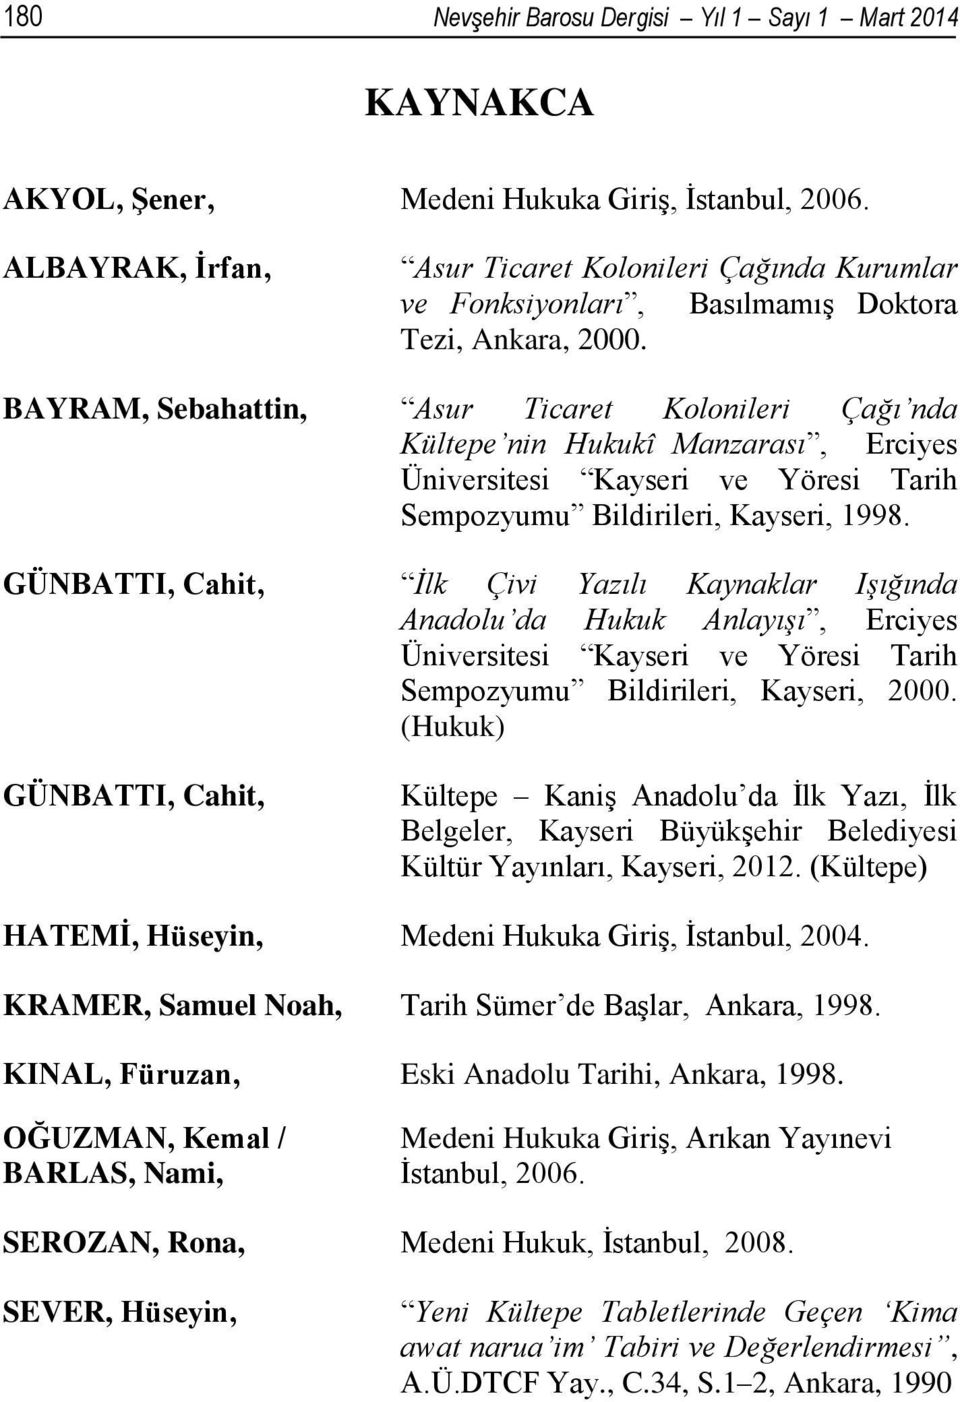 BAYRAM, Sebahattin, Asur Ticaret Kolonileri Çağı nda Kültepe nin Hukukî Manzarası, Erciyes Üniversitesi Kayseri ve Yöresi Tarih Sempozyumu Bildirileri, Kayseri, 1998.